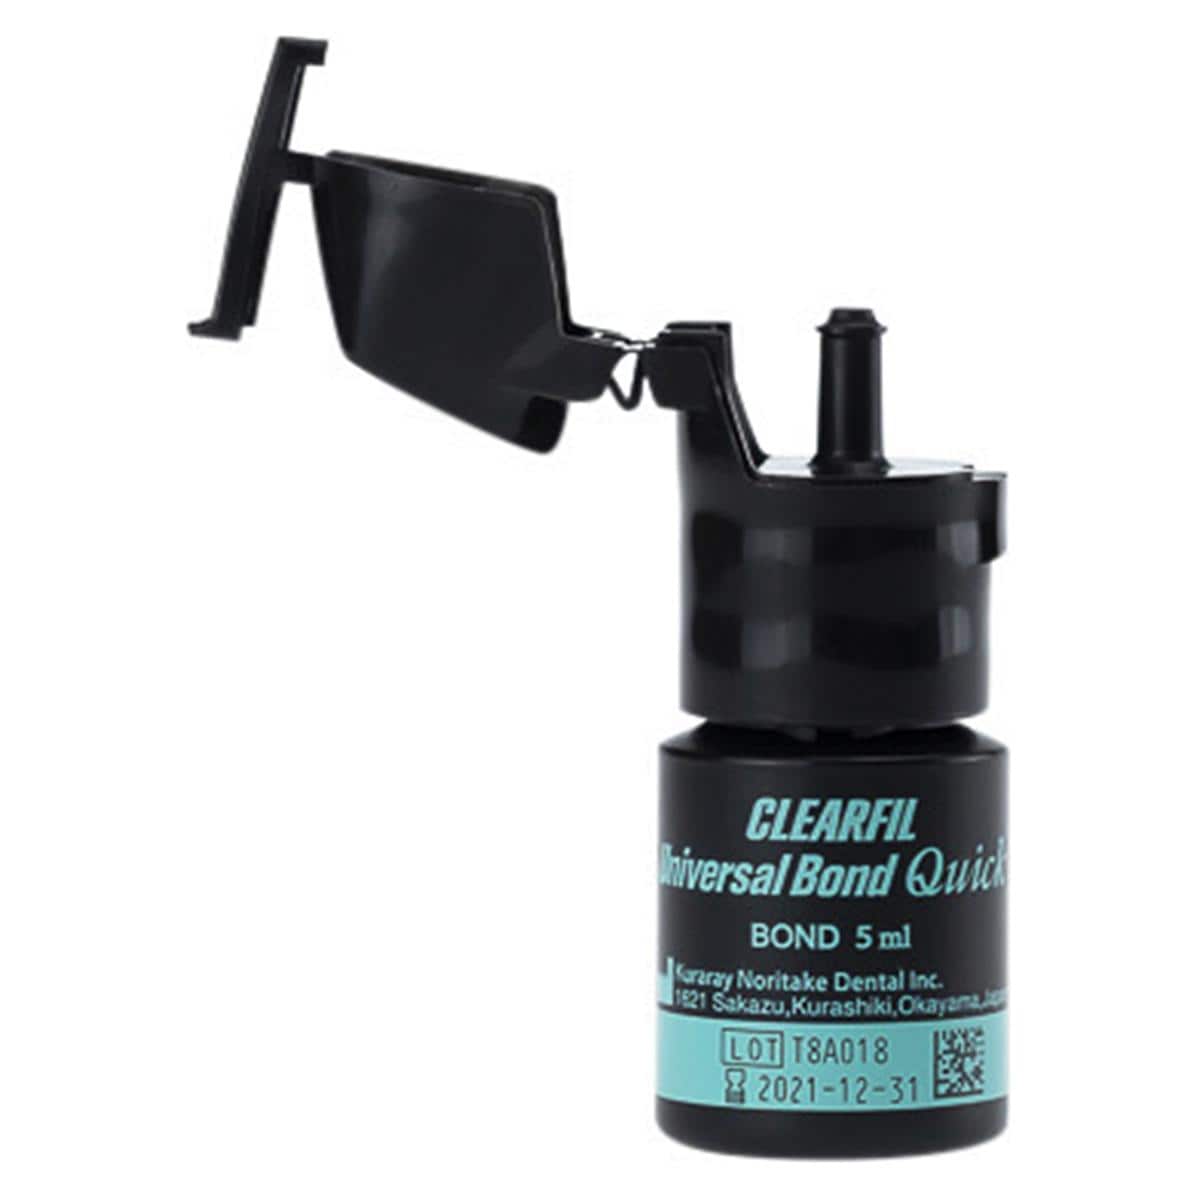 Clearfil Universal Bond Quick - Value Pack, flesje 3 x 5 ml #3574-EU